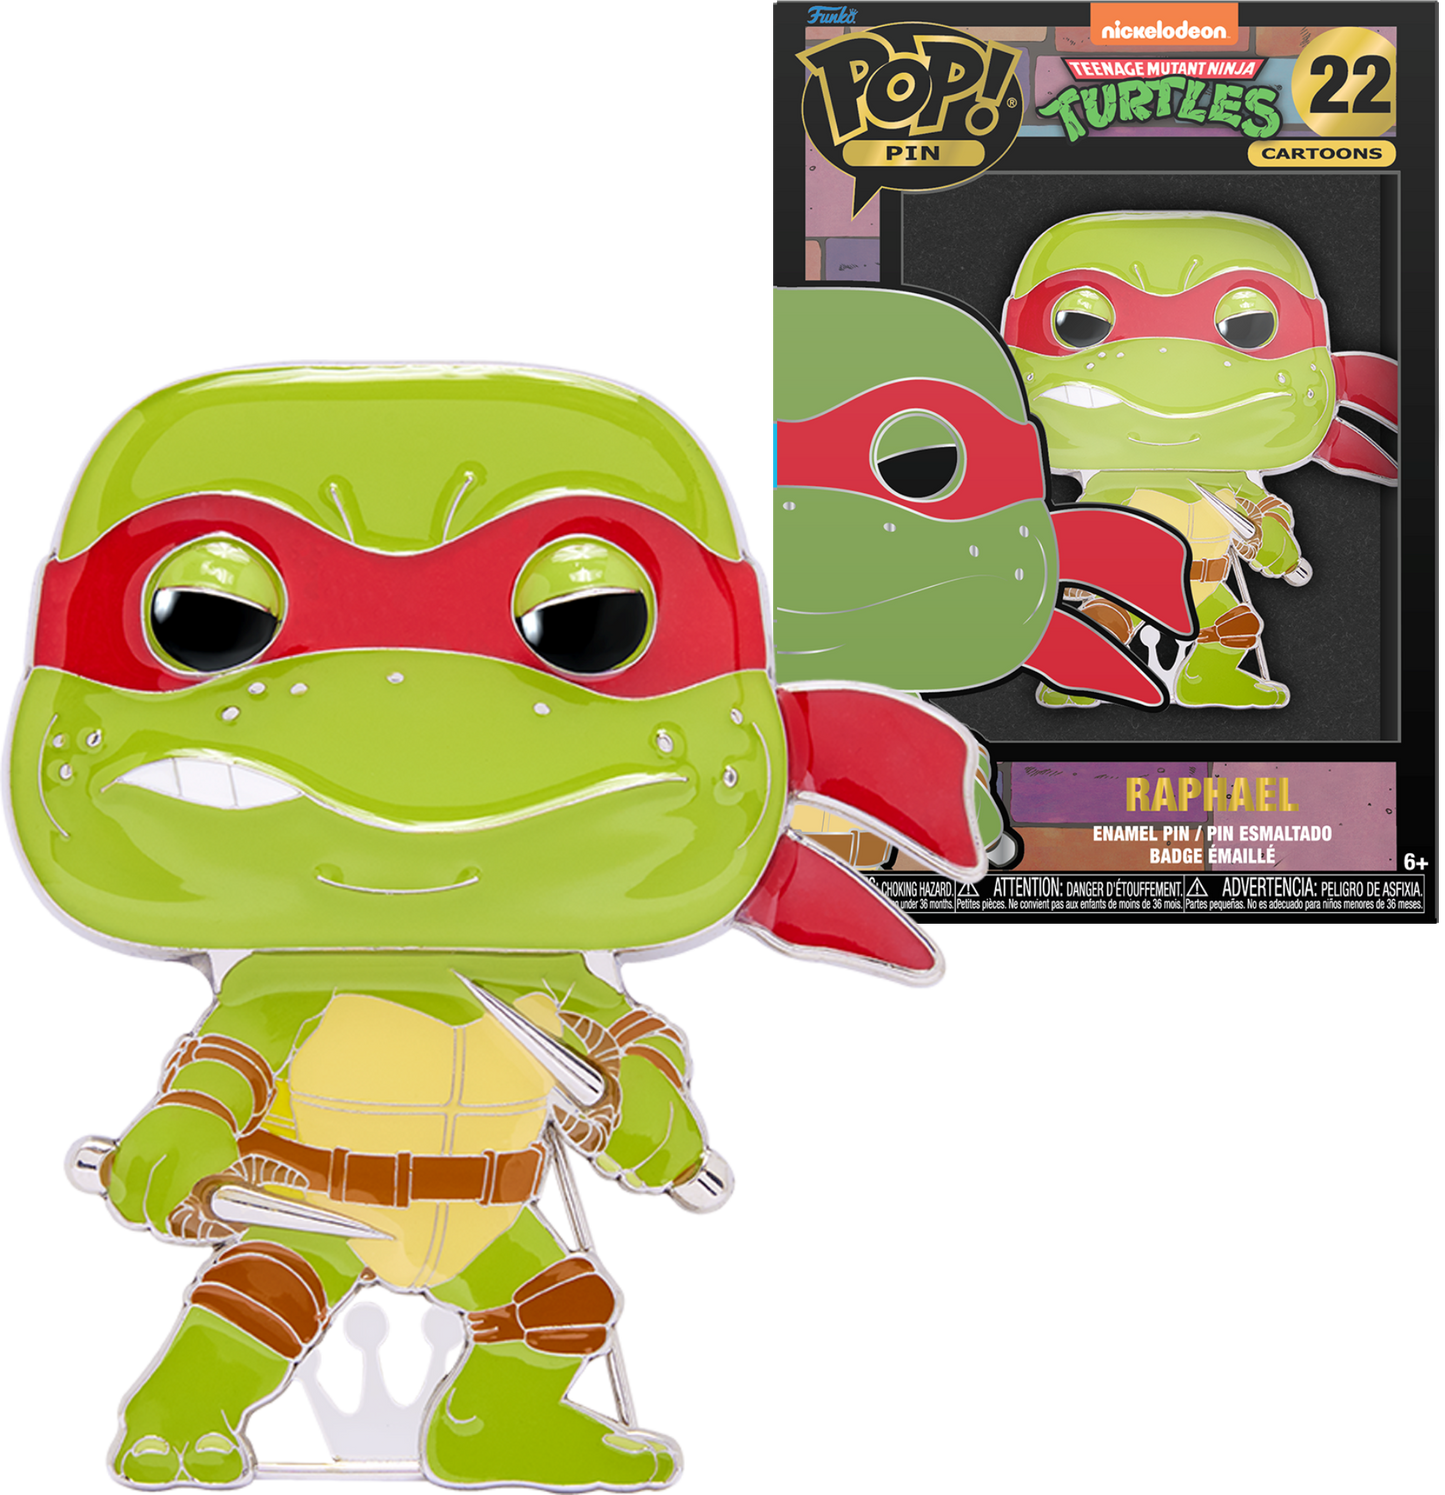 Raphael Teenage Mutant Ninja Turtles Funko Pop! Pin